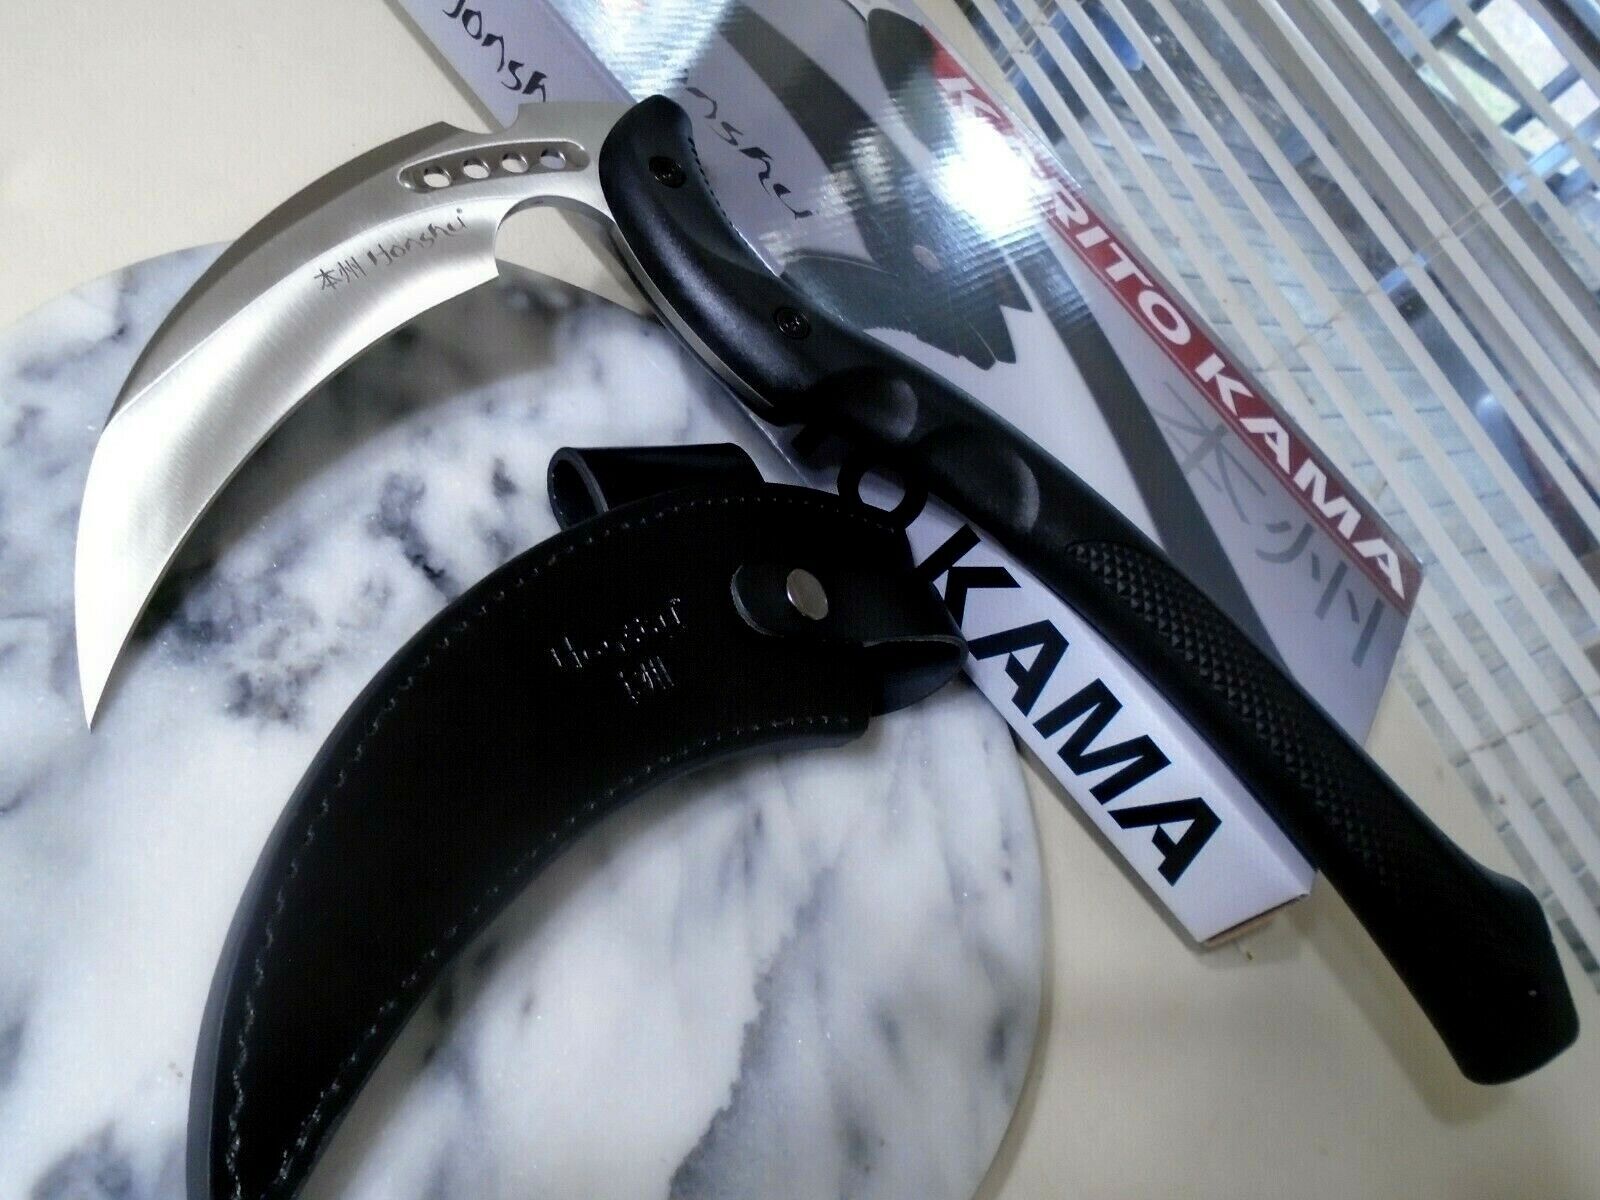 Honshu Karito Kama Sickle Knife Spike 7Cr13 5mm Tang Leather Sheath 3398 15.50